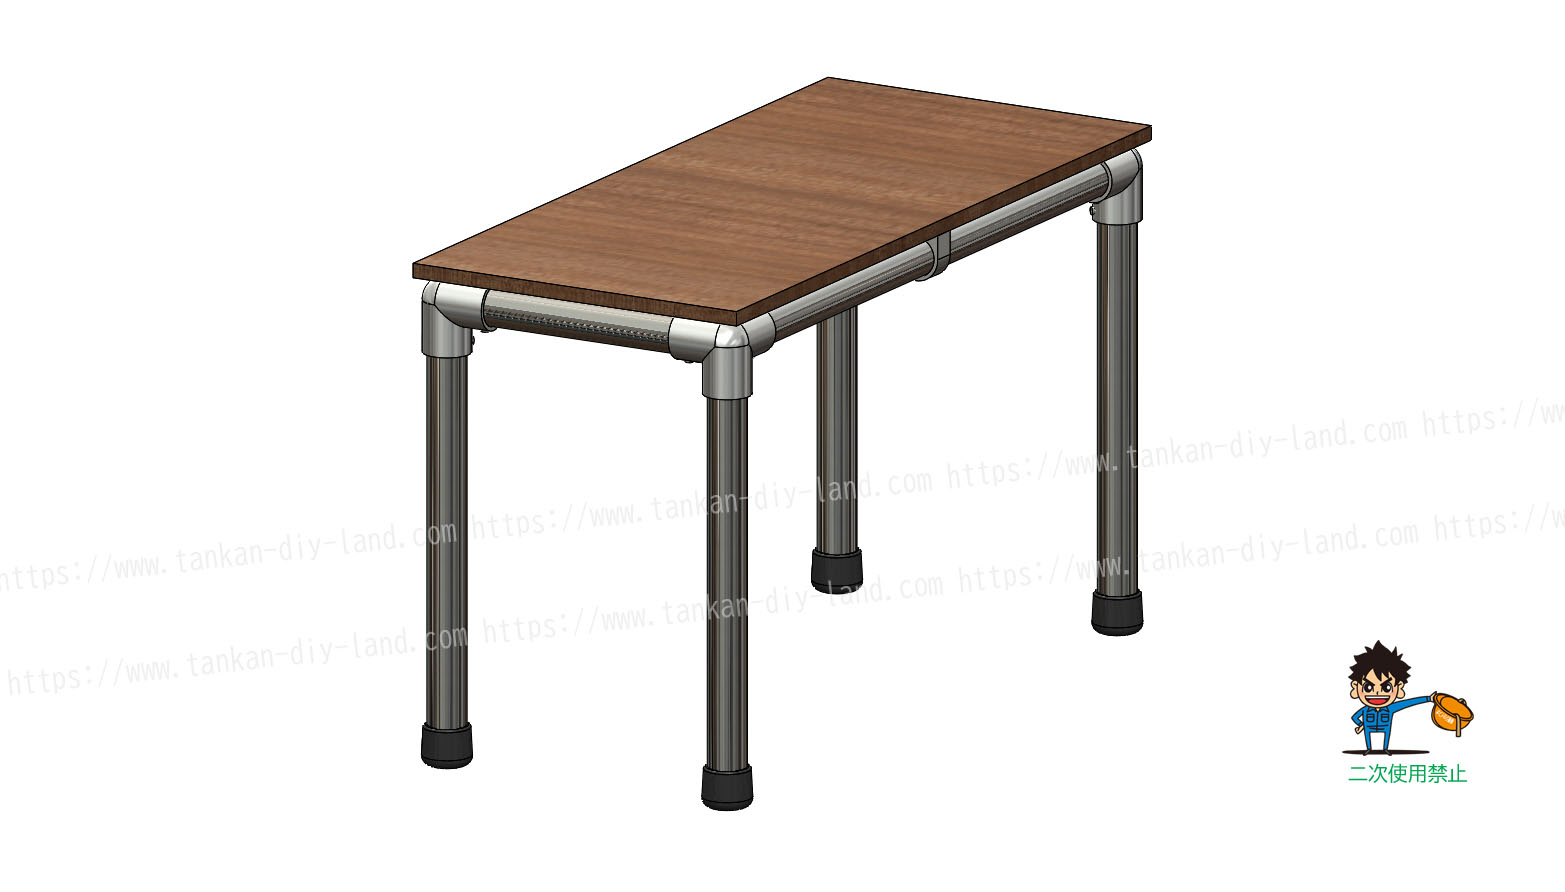 突起が無いから家具にもオススメ ｌａｂｏ金具で作る テーブル テーブル 5 単管パイプで作る 単管パイプ のdiy向け 技術者向けの情報なら単管diyランド